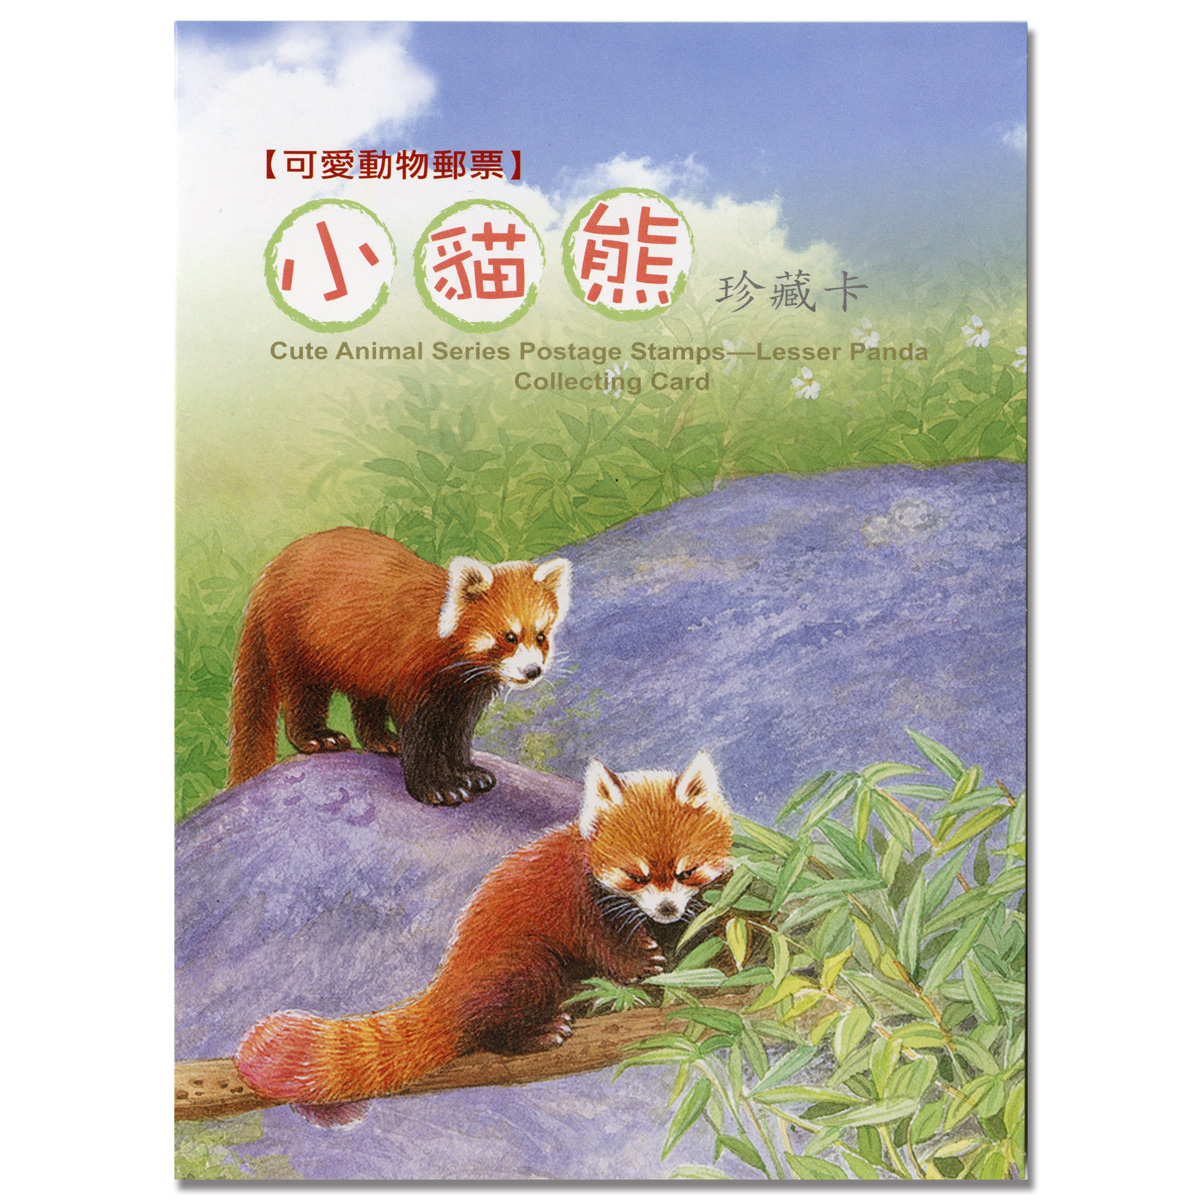 可愛動物郵票—小貓熊珍藏卡